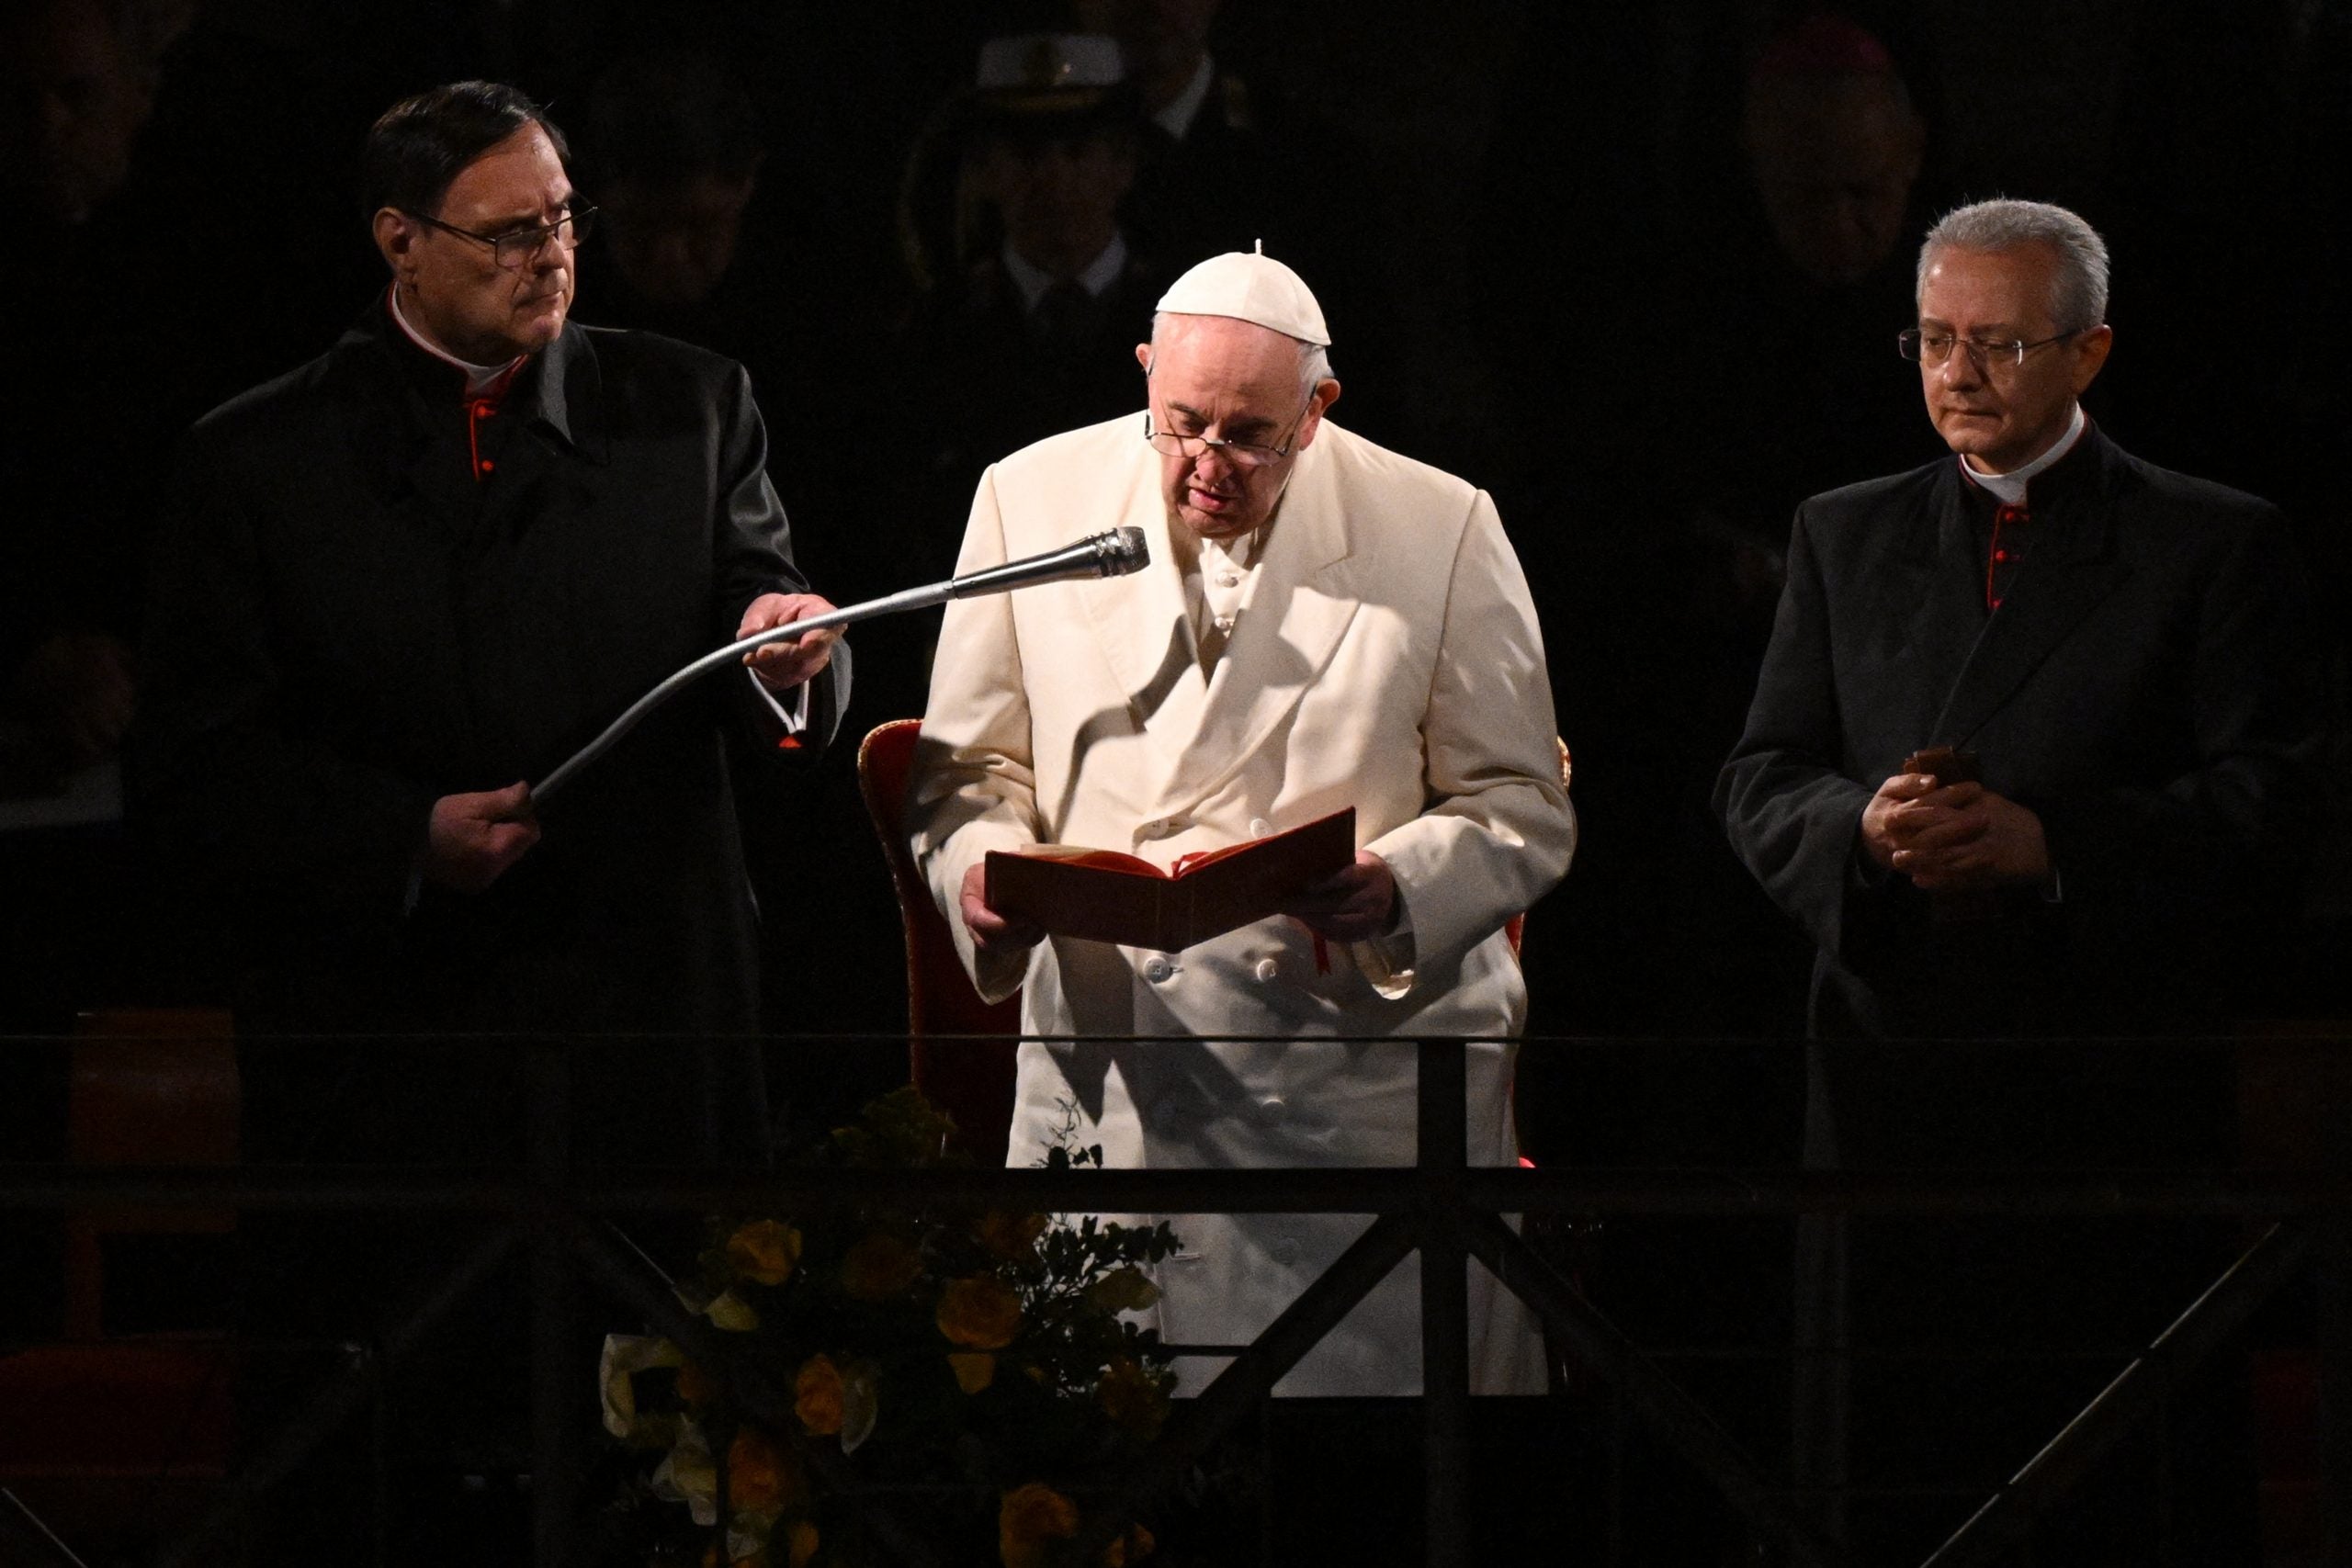 El Papa Francisco preside el Vía Crucis el Viernes Santo, 15 de abril de 2022 por el monumento Coliseo en Roma. 